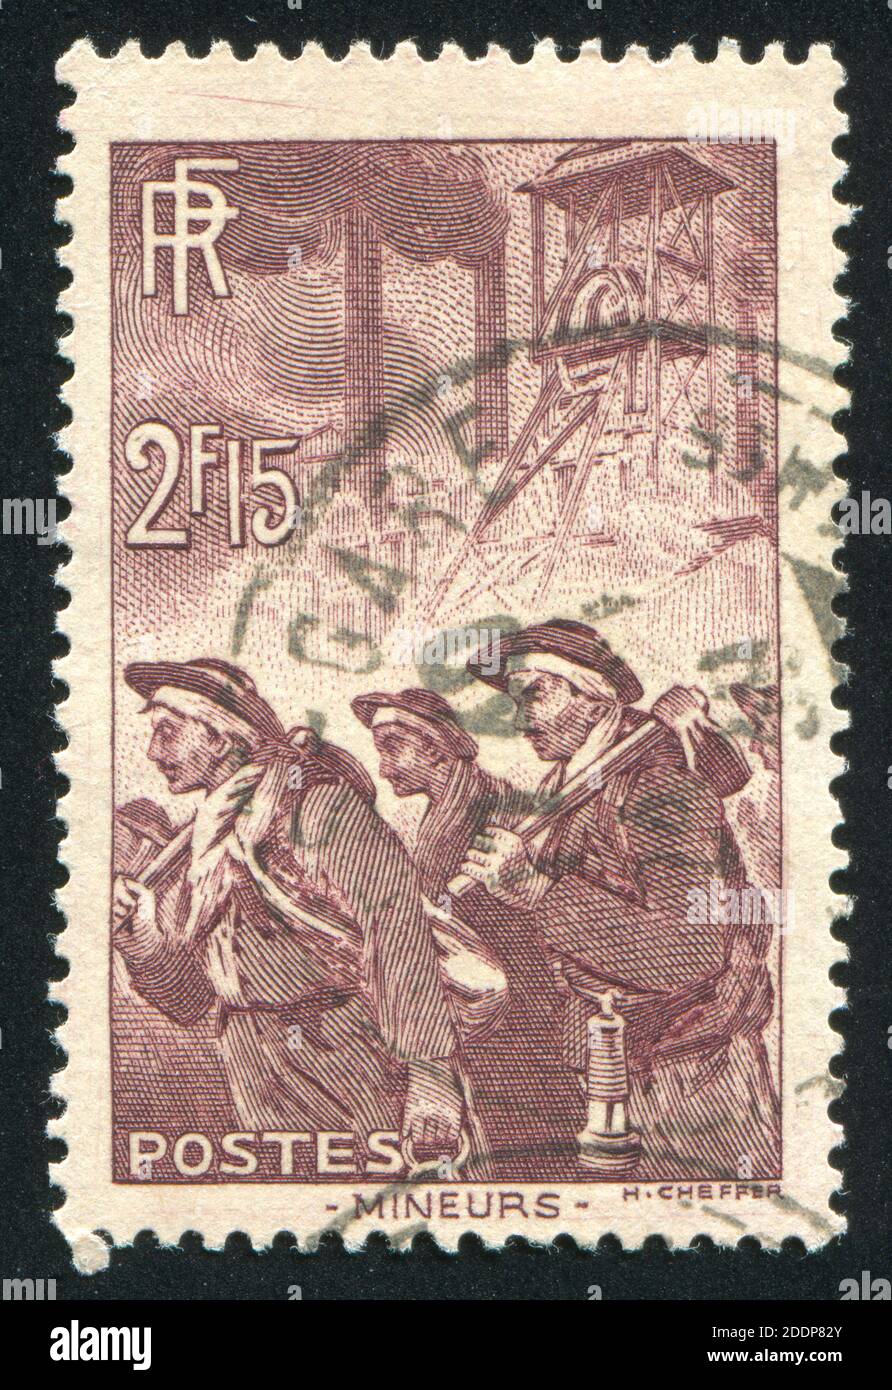 FRANCE - VERS 1938 : timbre imprimé par la France, montre Miners, vers 1938 Banque D'Images